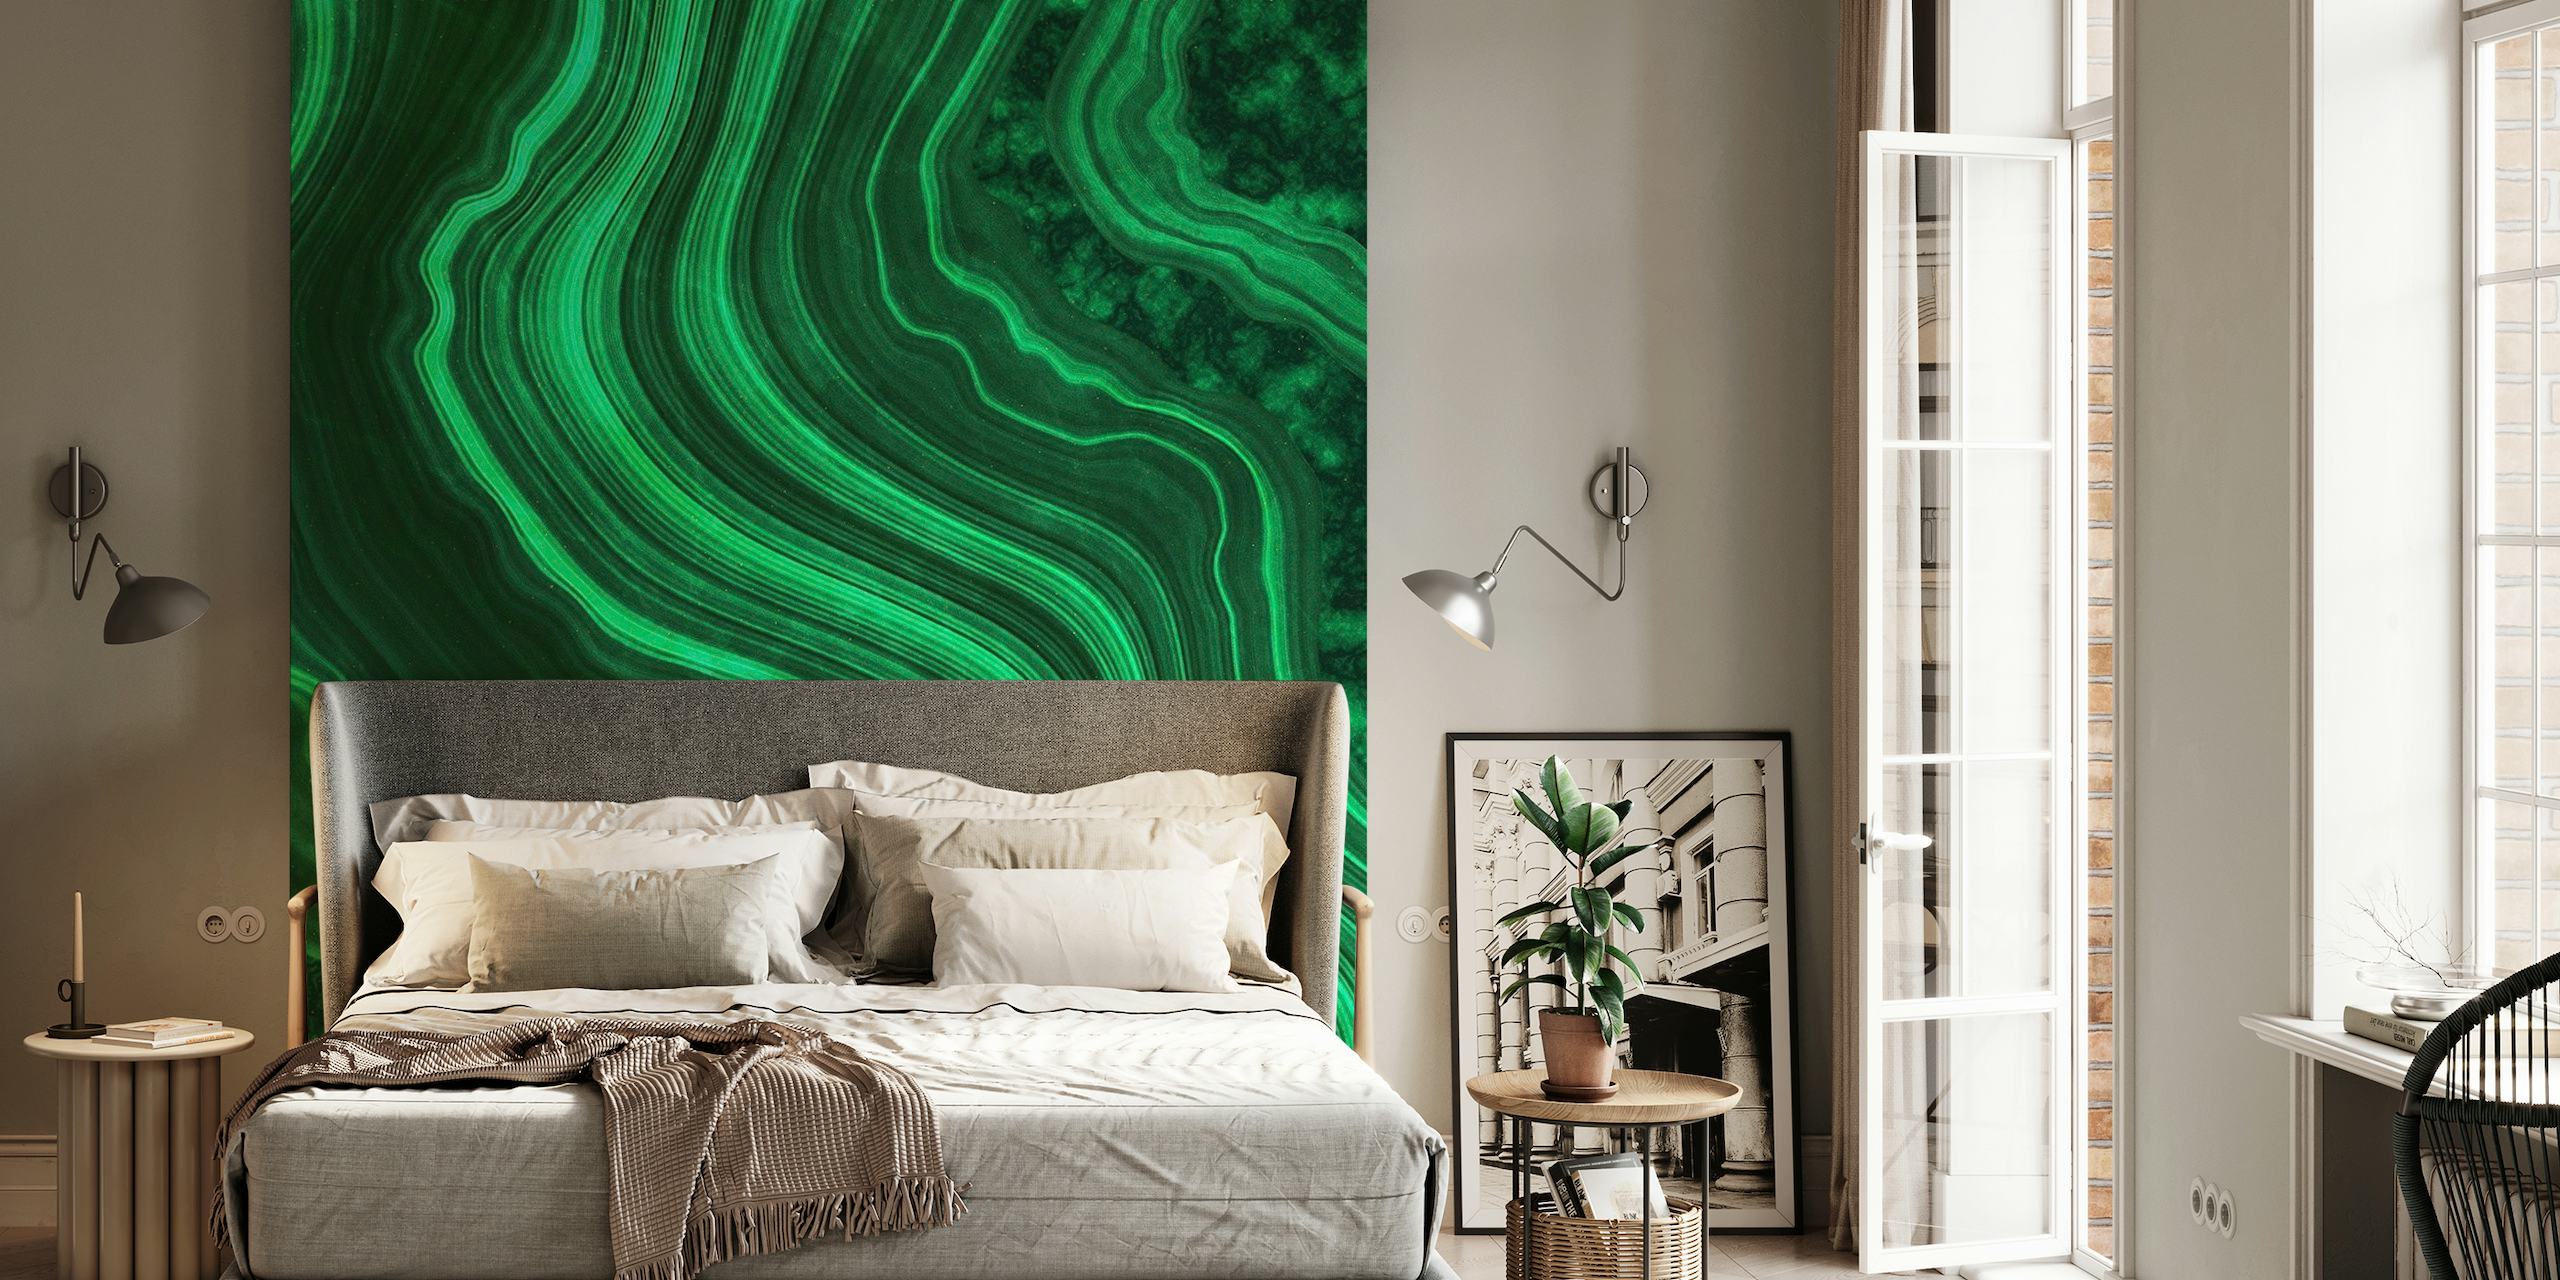 Smaragdgroene marmeren textuur met wervelende patronen voor muurschildering